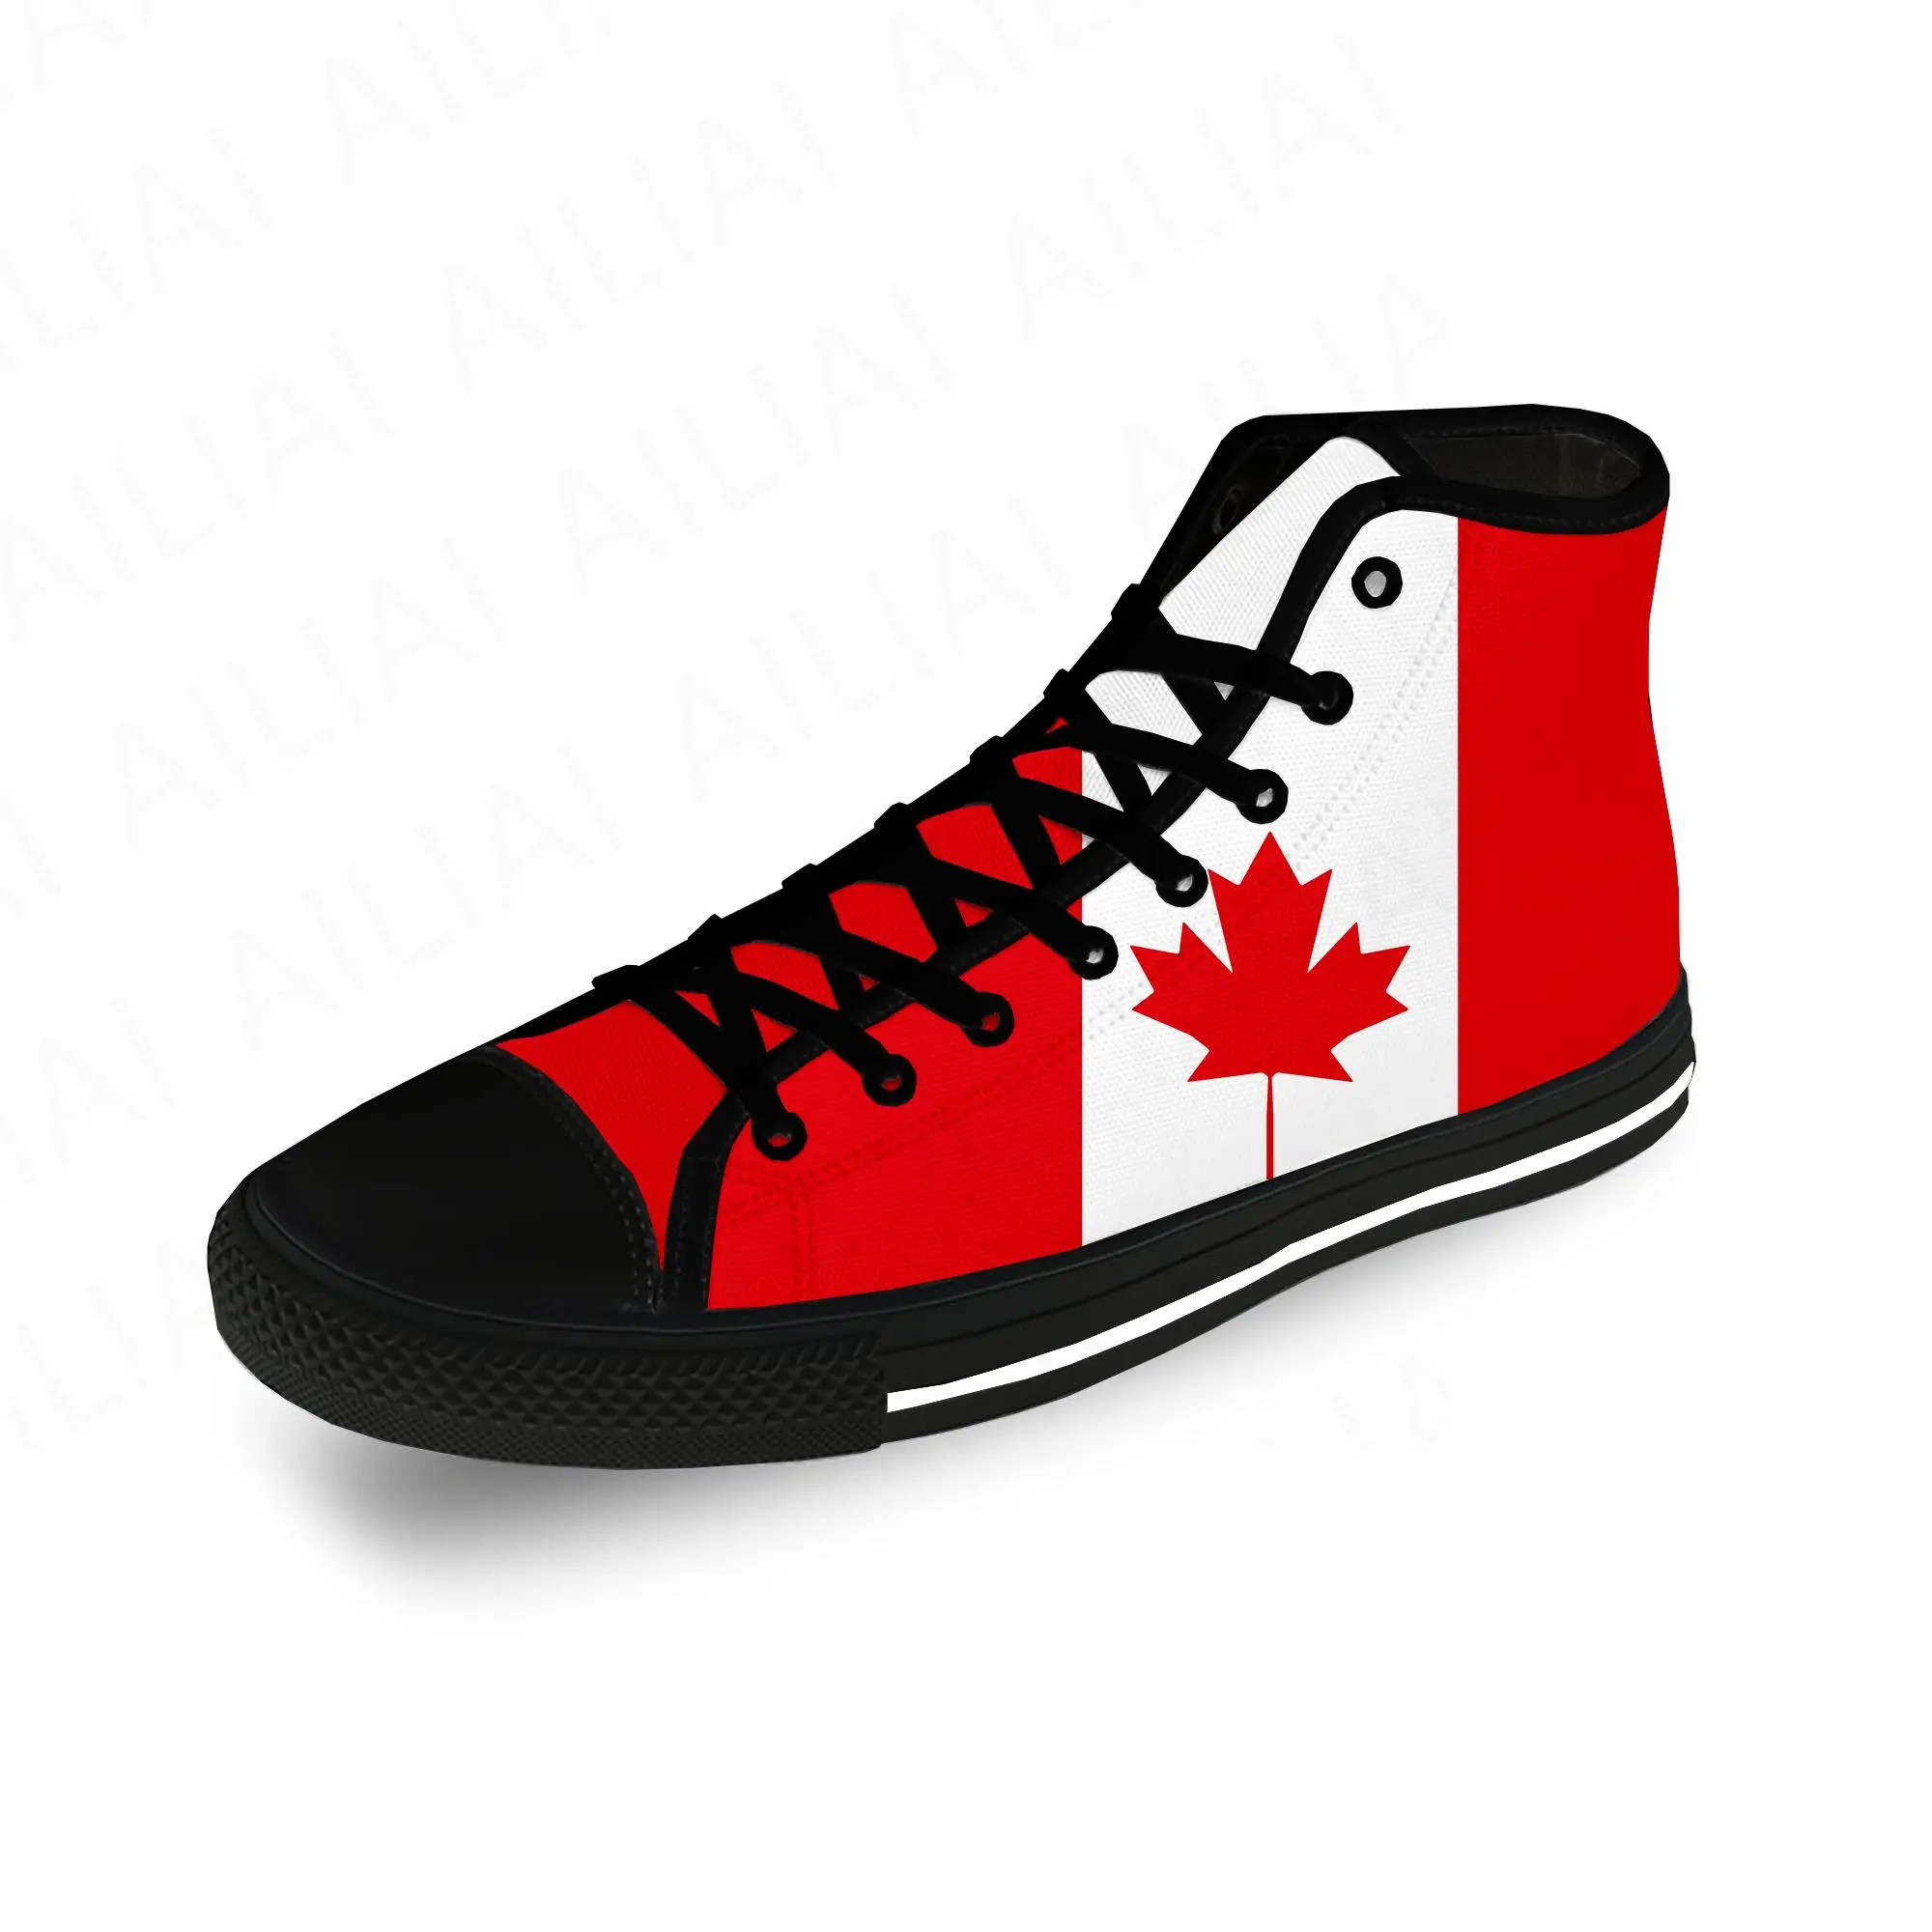 

Текстильные кроссовки с флагом Канады, красным кленовым принтом